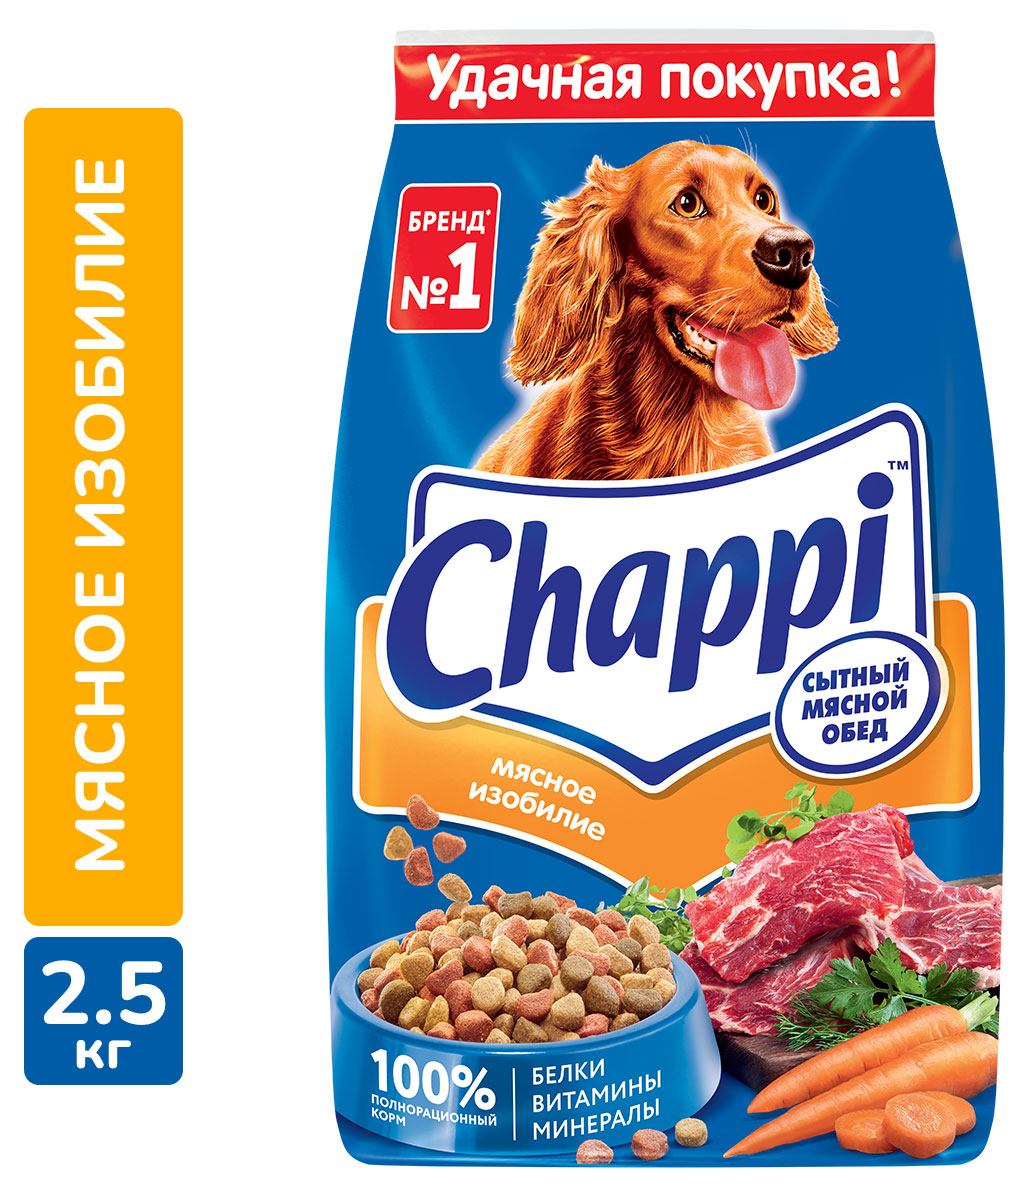 Chappi | Сухой корм для собак Chappi Сытный мясной обед Мясное изобилие, 2,5 кг